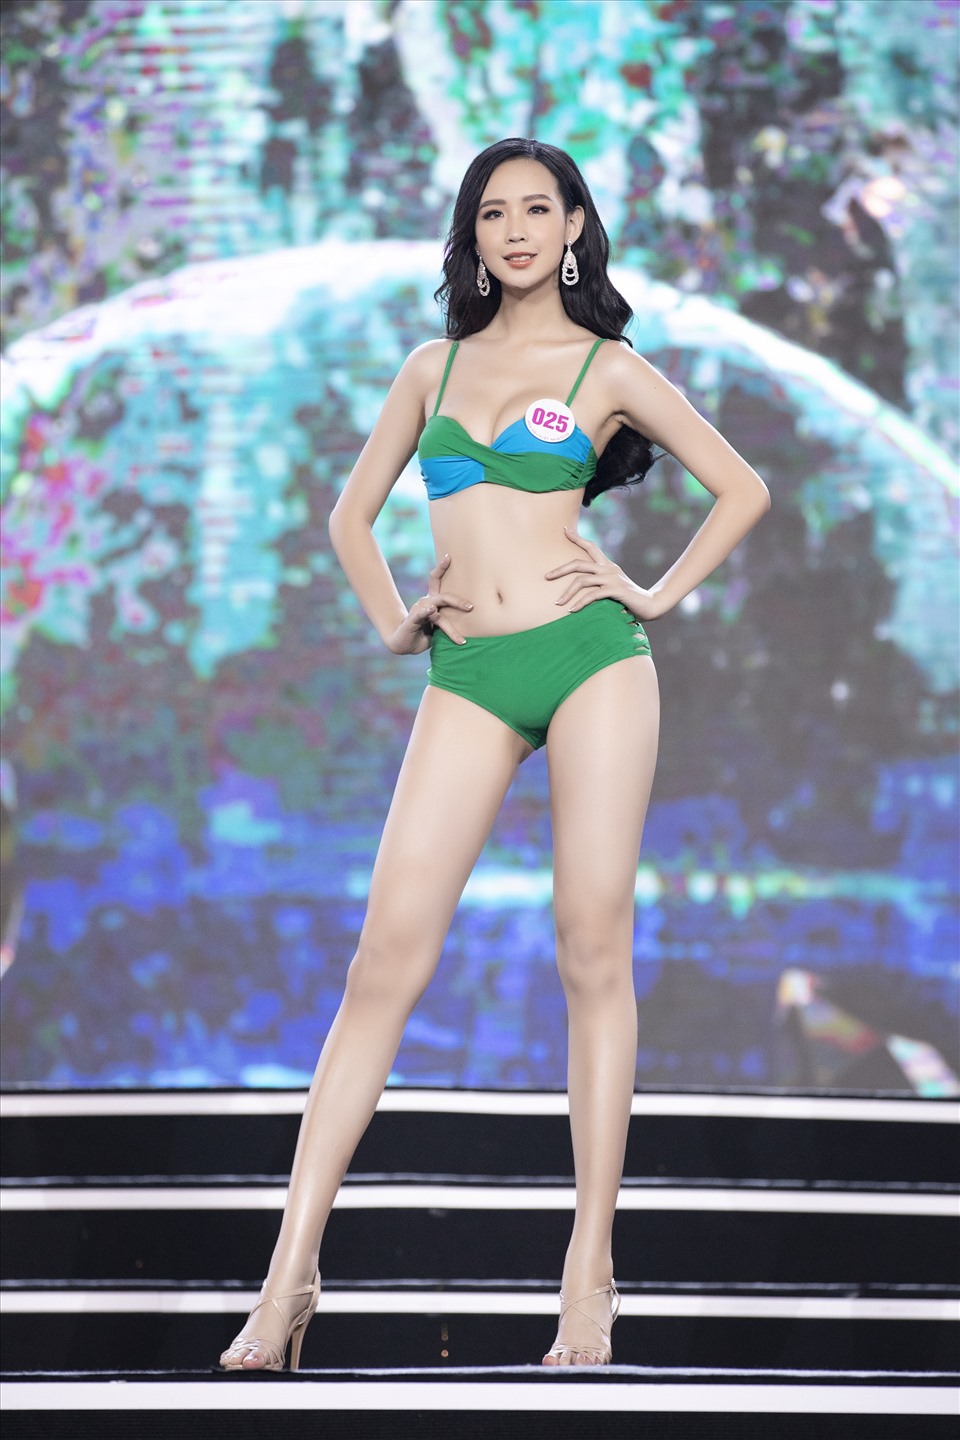 Nhan sắc xinh đẹp, lôi cuốn của thí sinh cao 1,85 m vào thẳng top 20 Miss World Vietnam 2022 - Ảnh 6.